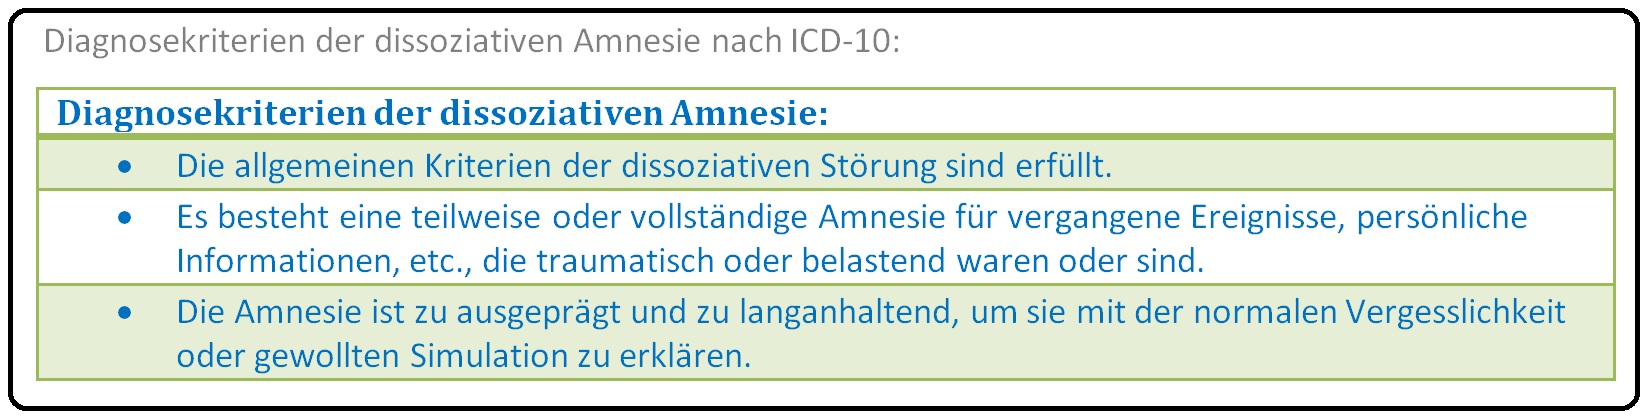 562 Diagnosekriterien der dissoziativen Amnesie nach ICD 10